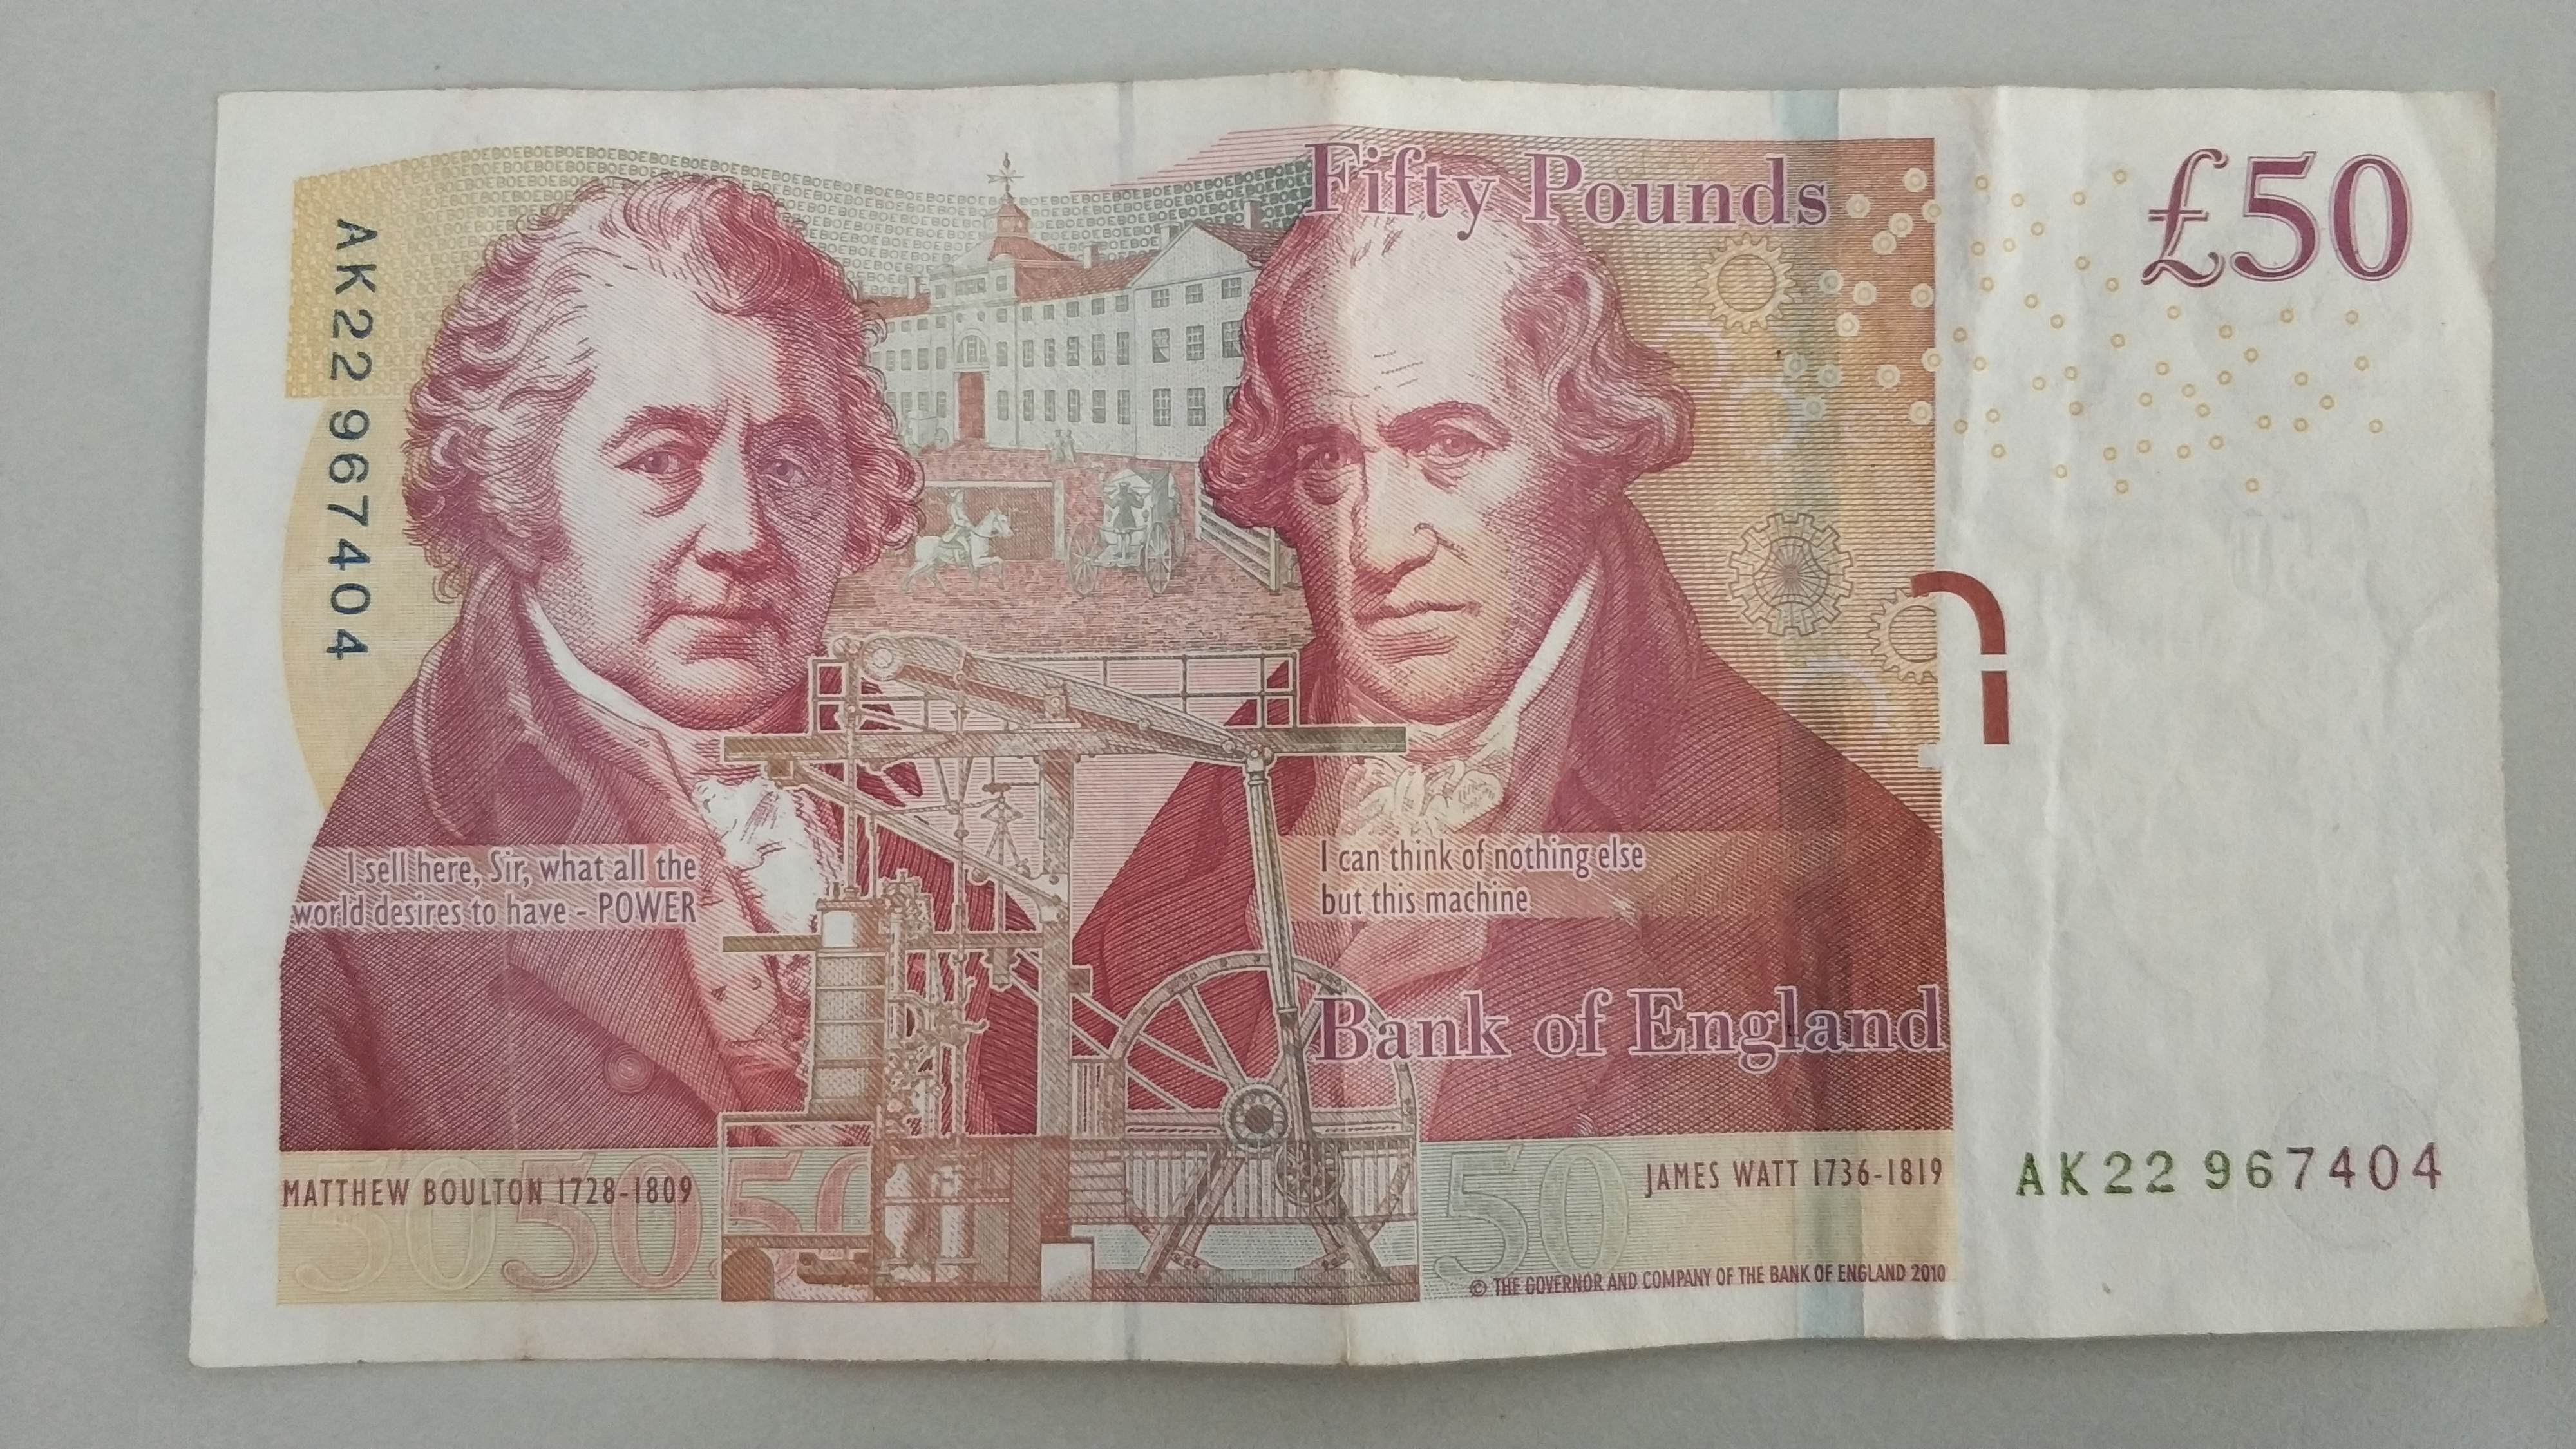 旧版50英镑纸币图片